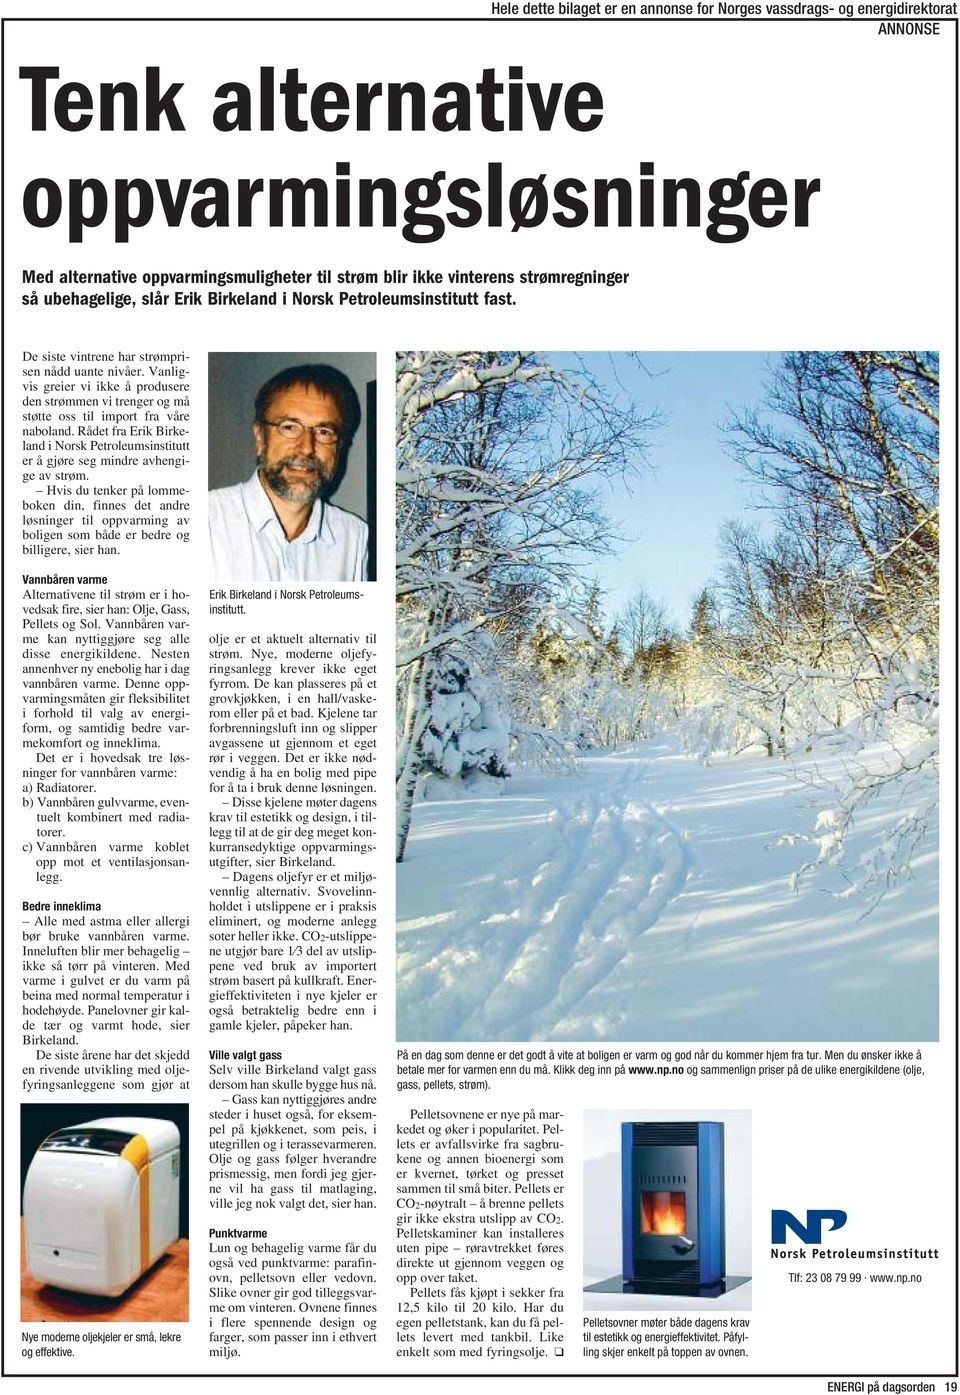 Rådet fra Erik Birkeland i Norsk Petroleumsinstitutt er å gjøre seg mindre avhengige av strøm.